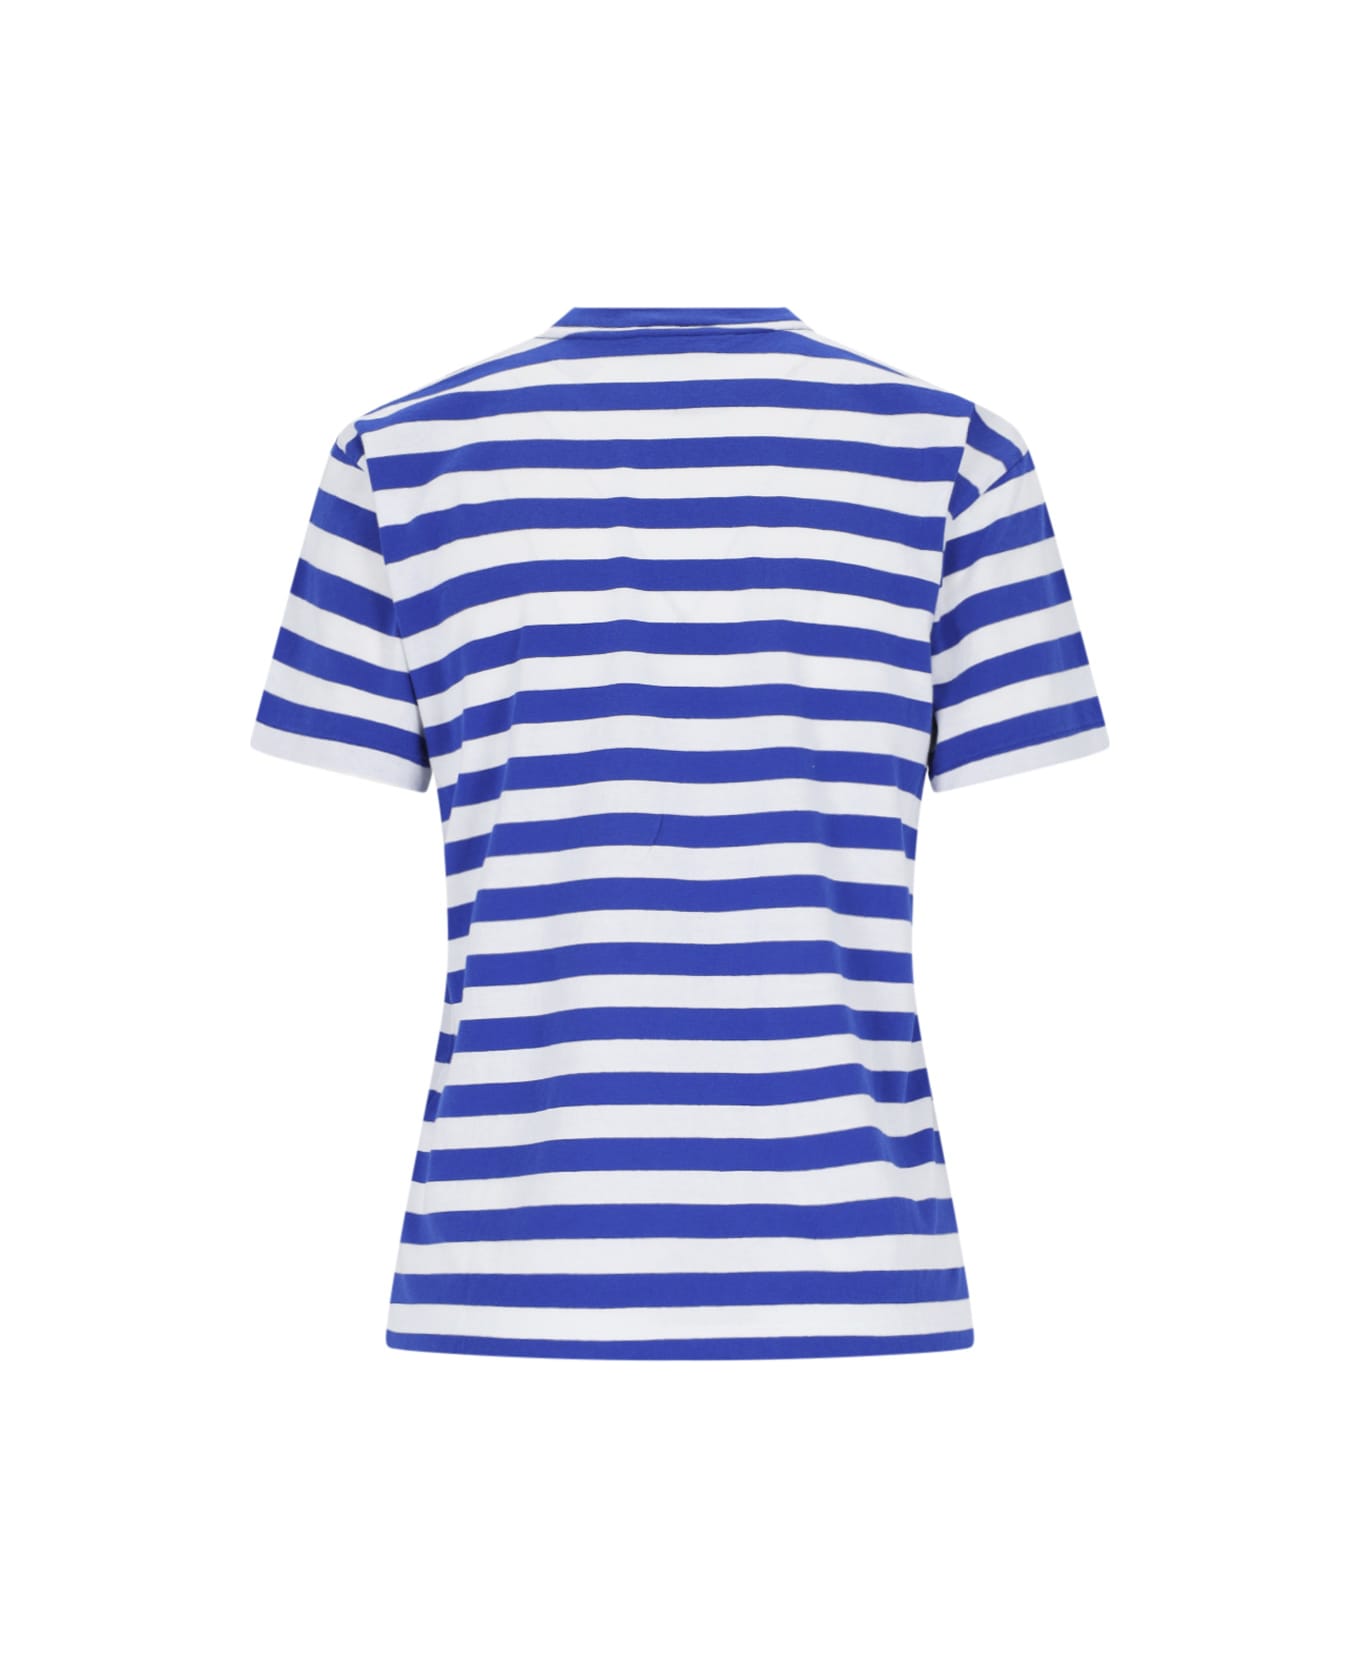 Polo Ralph Lauren Striped T-shirt - Blue